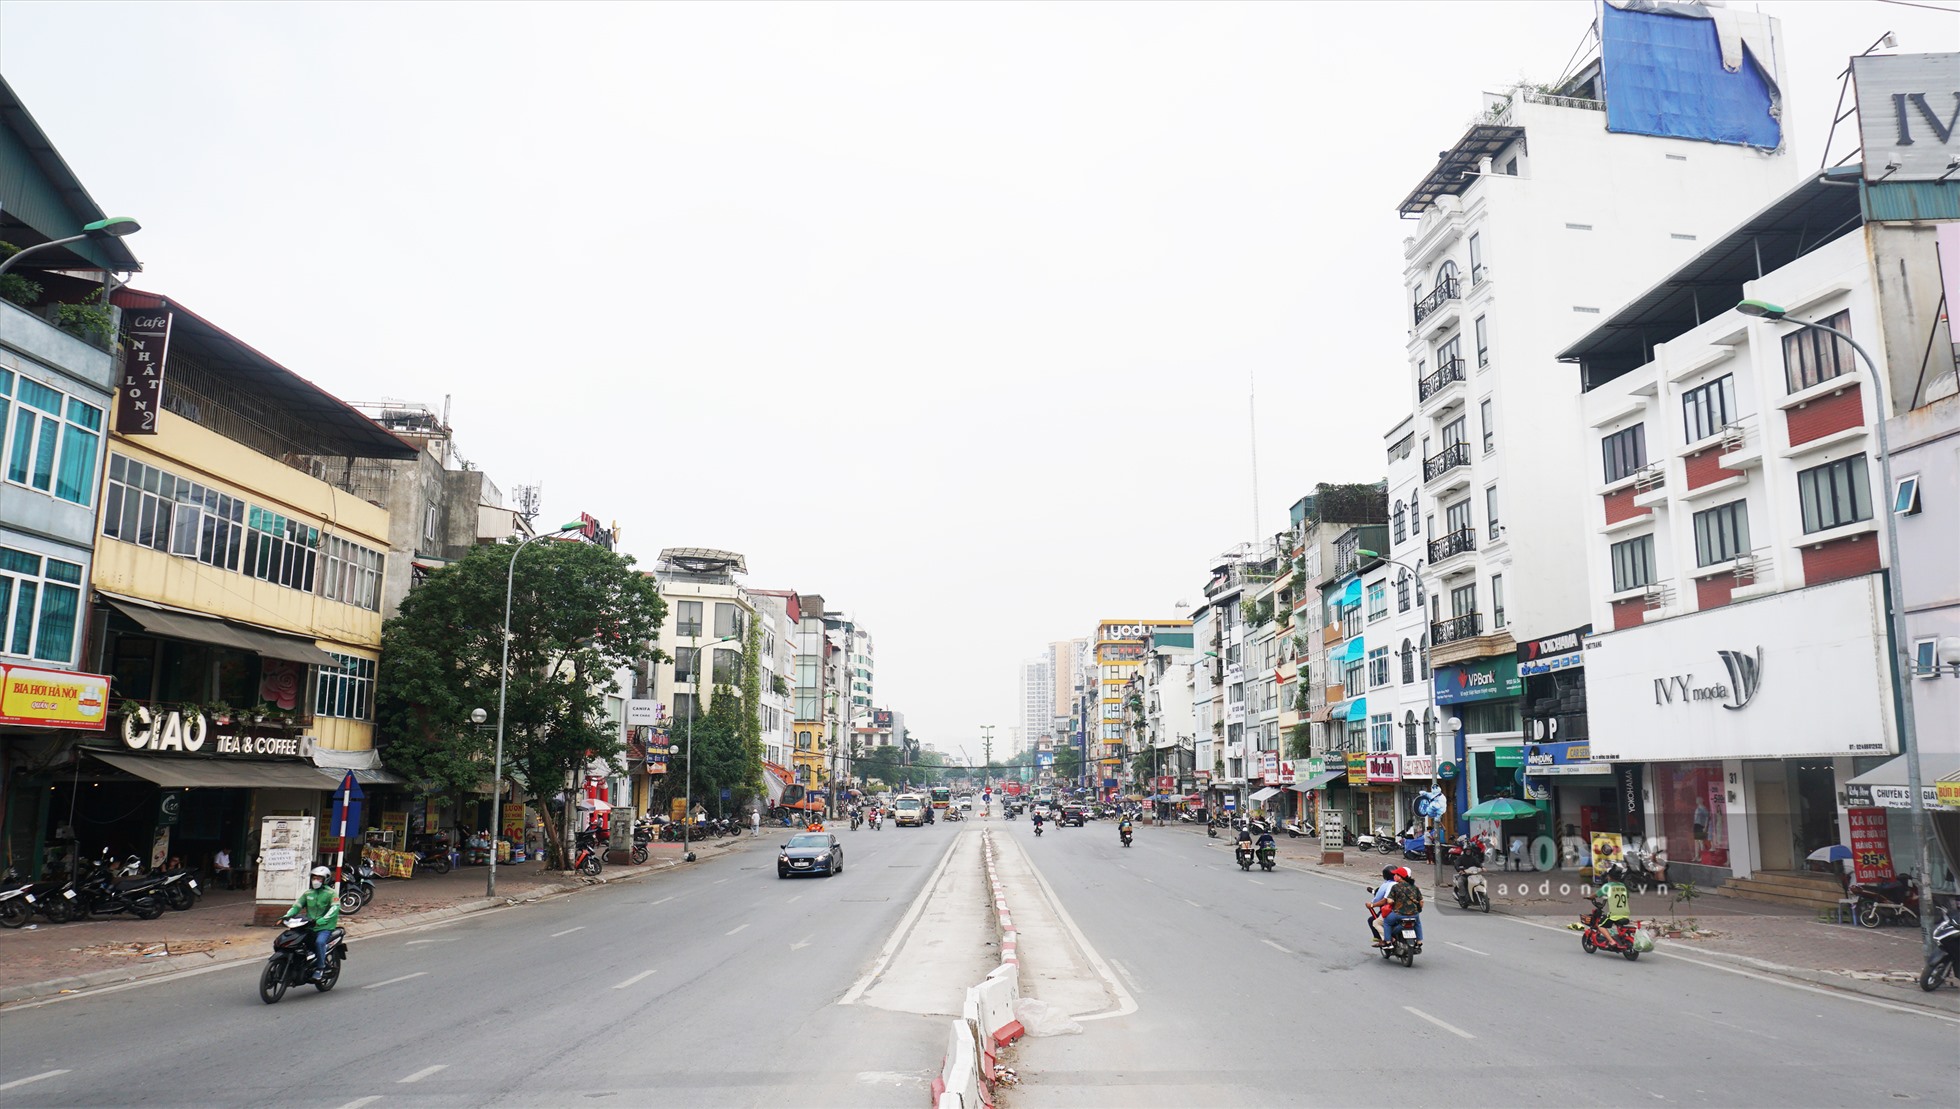 Theo ghi nhận, tuyến đường Kim Đồng (quận Hoàng Mai) sau khi di dời 140 cây xanh, việc 2 bên đường không một bóng cây xanh, khiến nhiều người dân khu vực này và những người tham gia giao thông cảm thấy ngột ngạt.